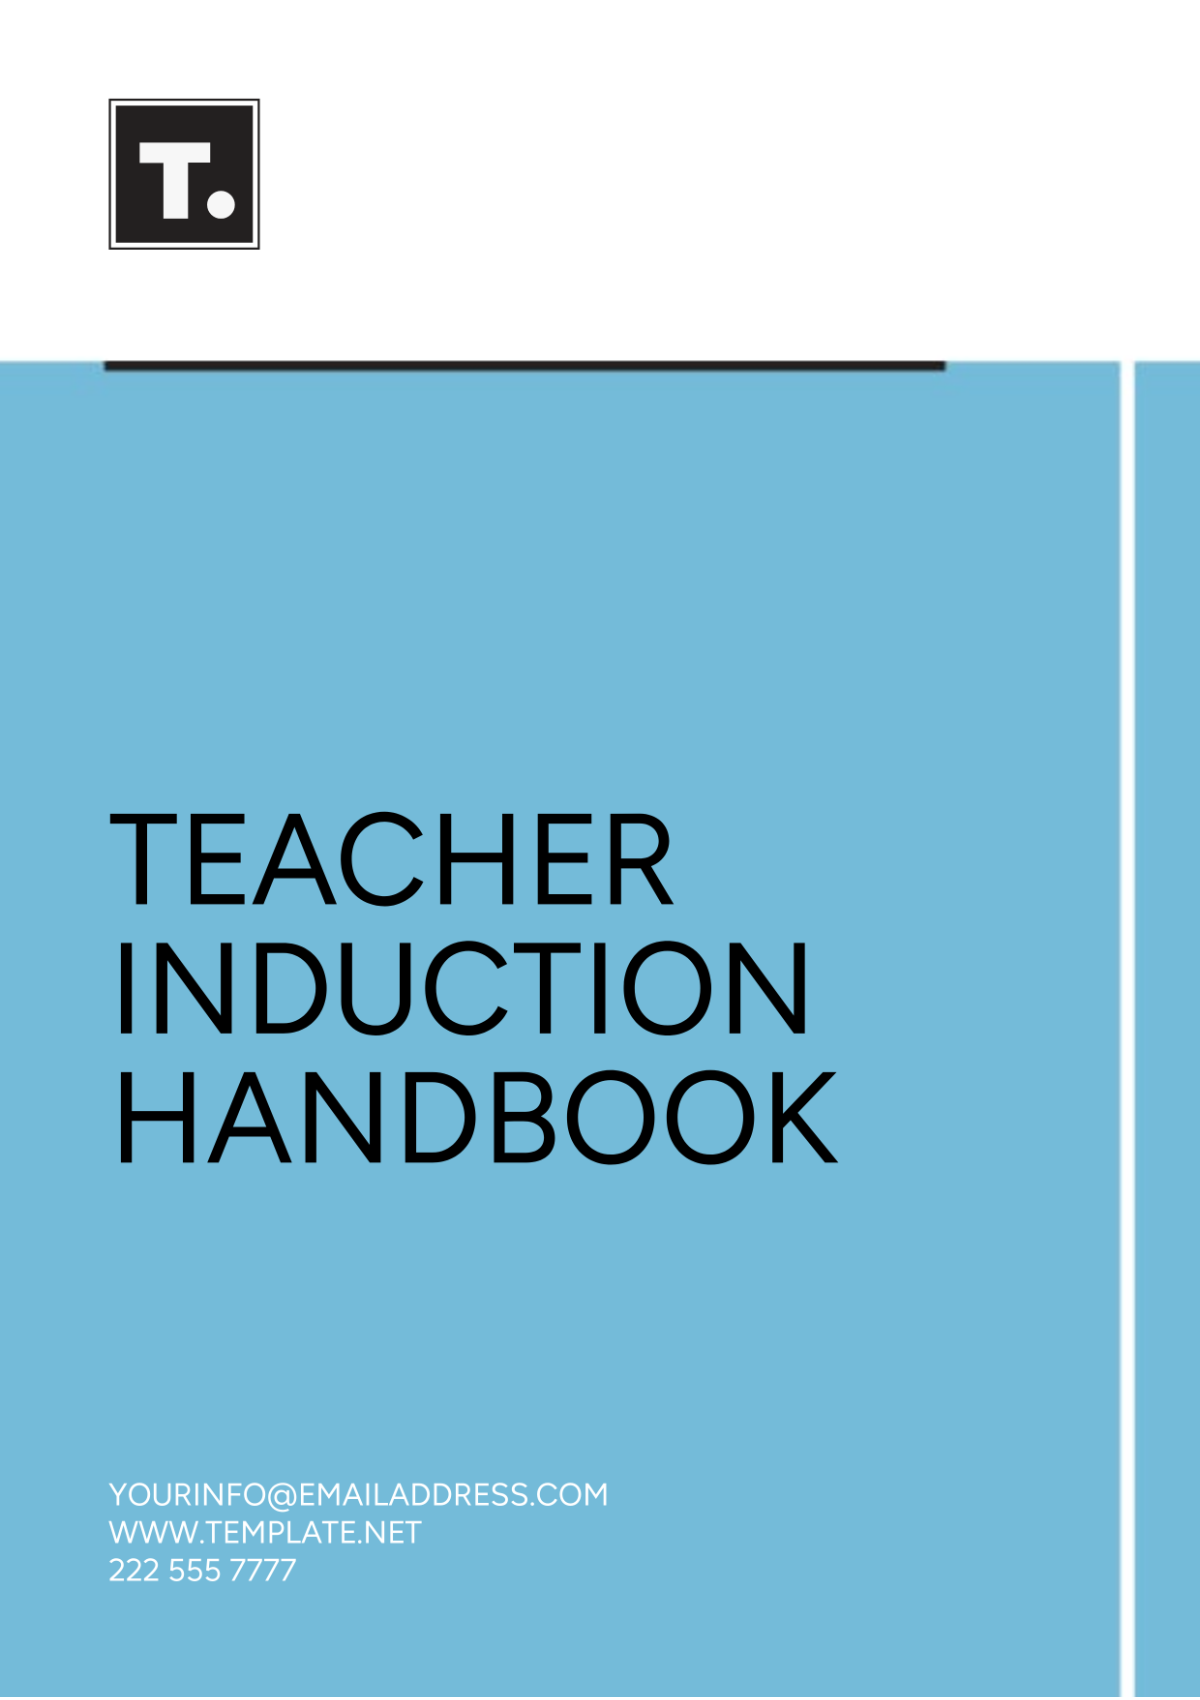 Free Teacher Induction Handbook Template